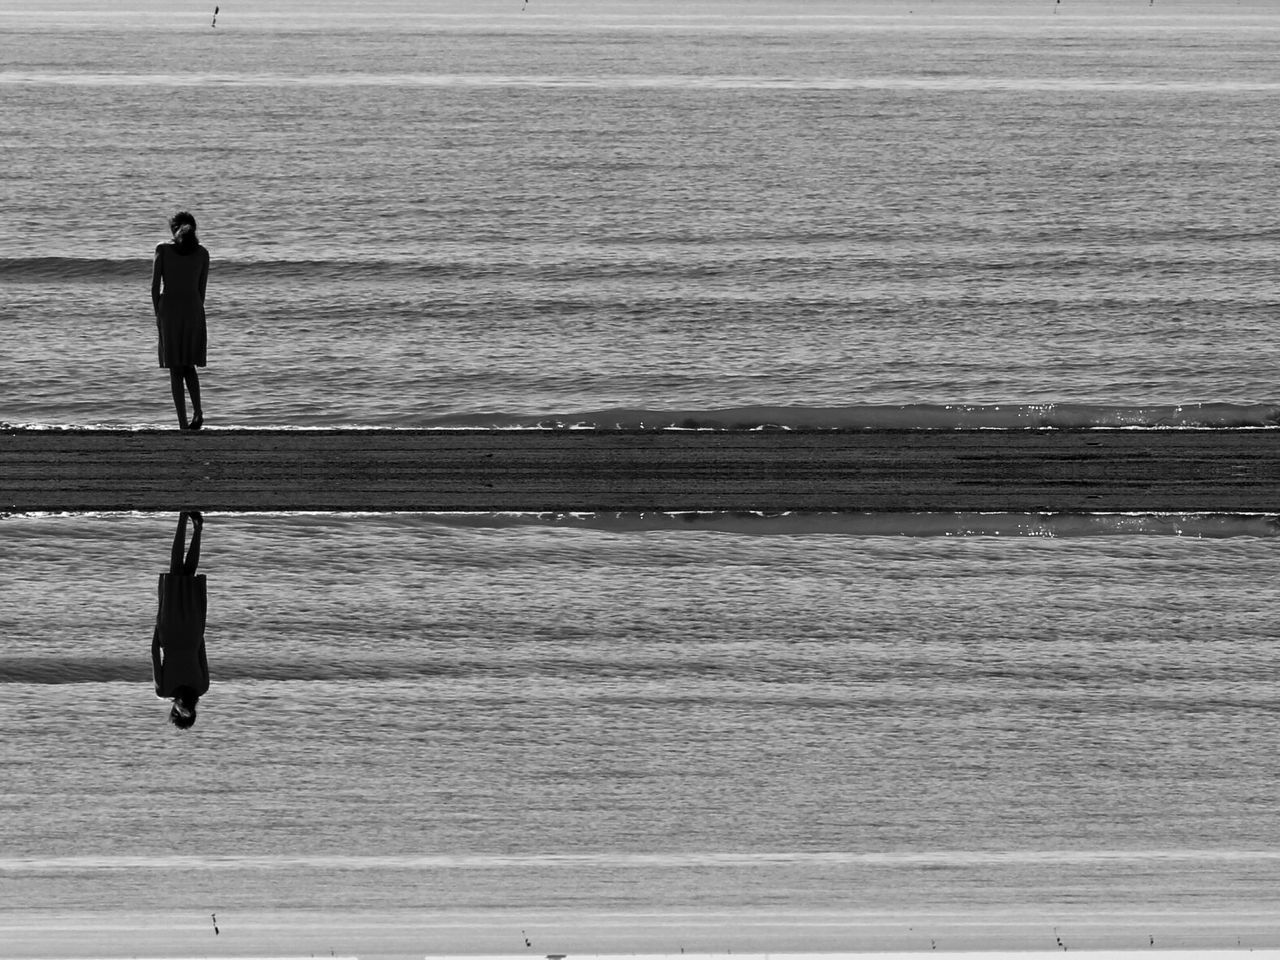 WOMAN WALKING ON BEACH